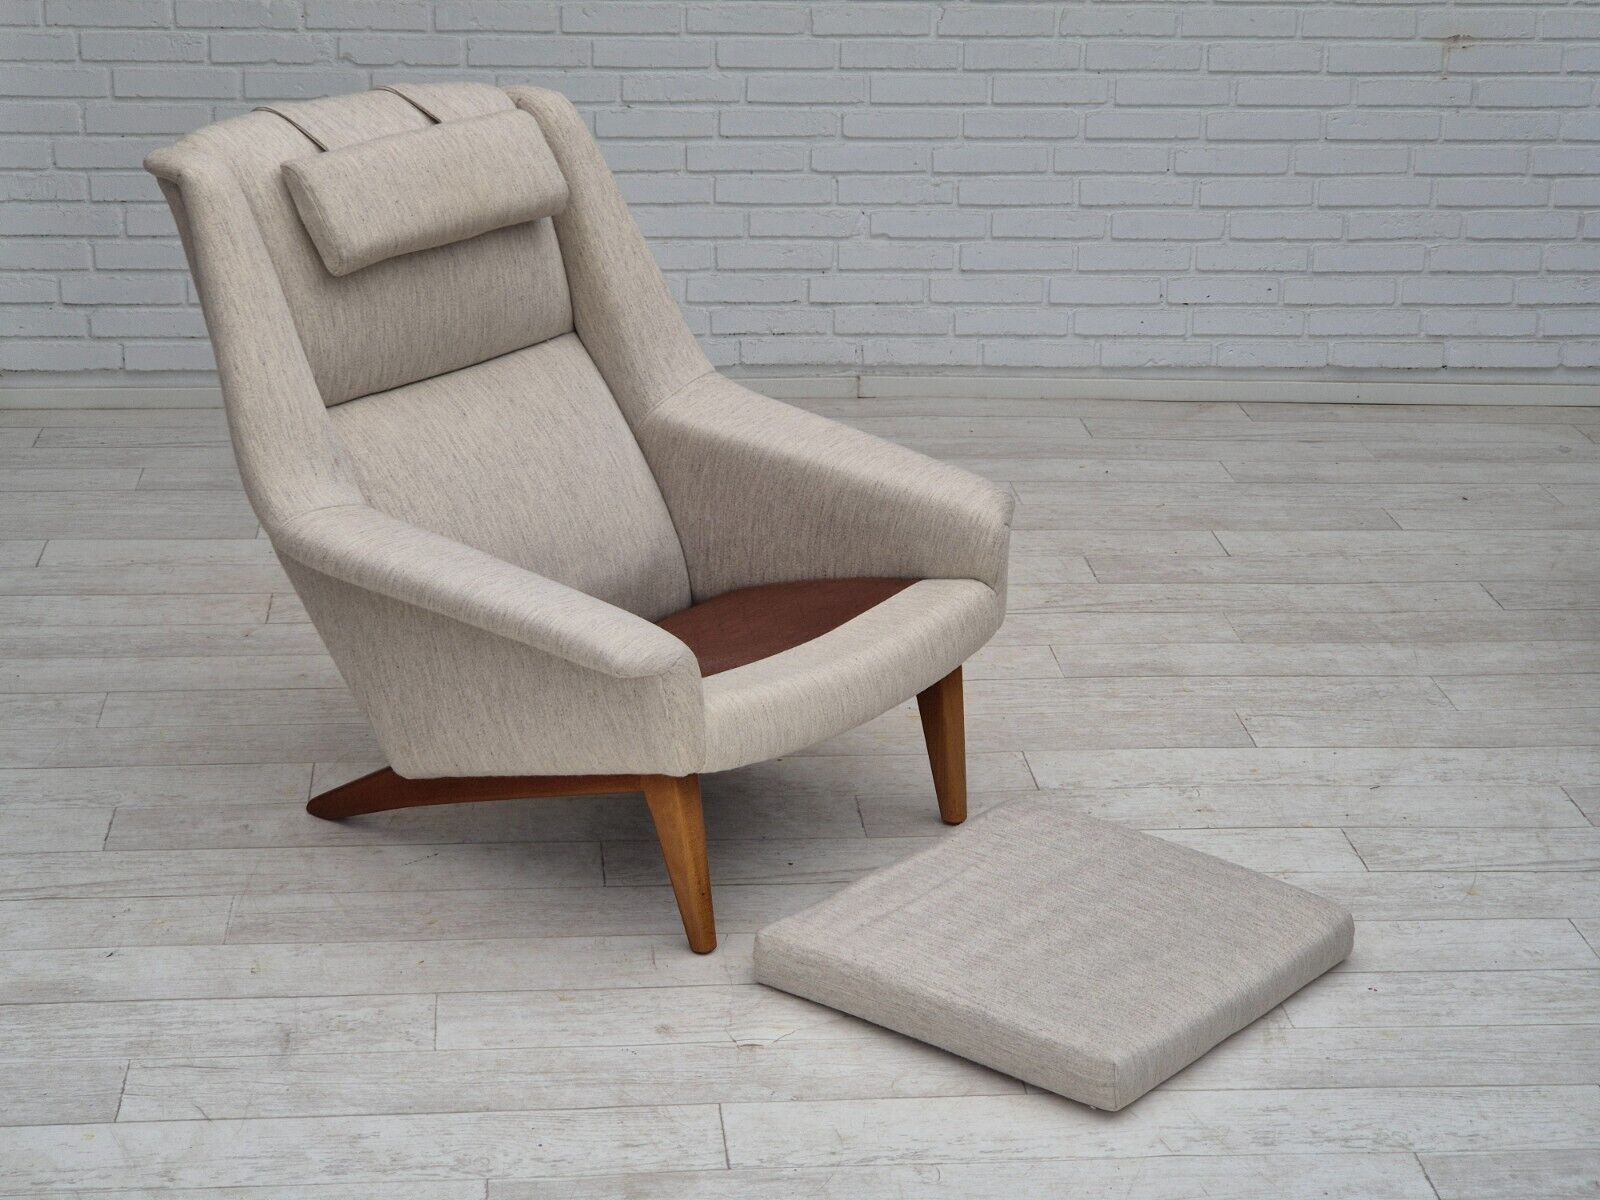 1970s Danish design by Folke Ohlsson chair model 4410 for Fritz Hansen